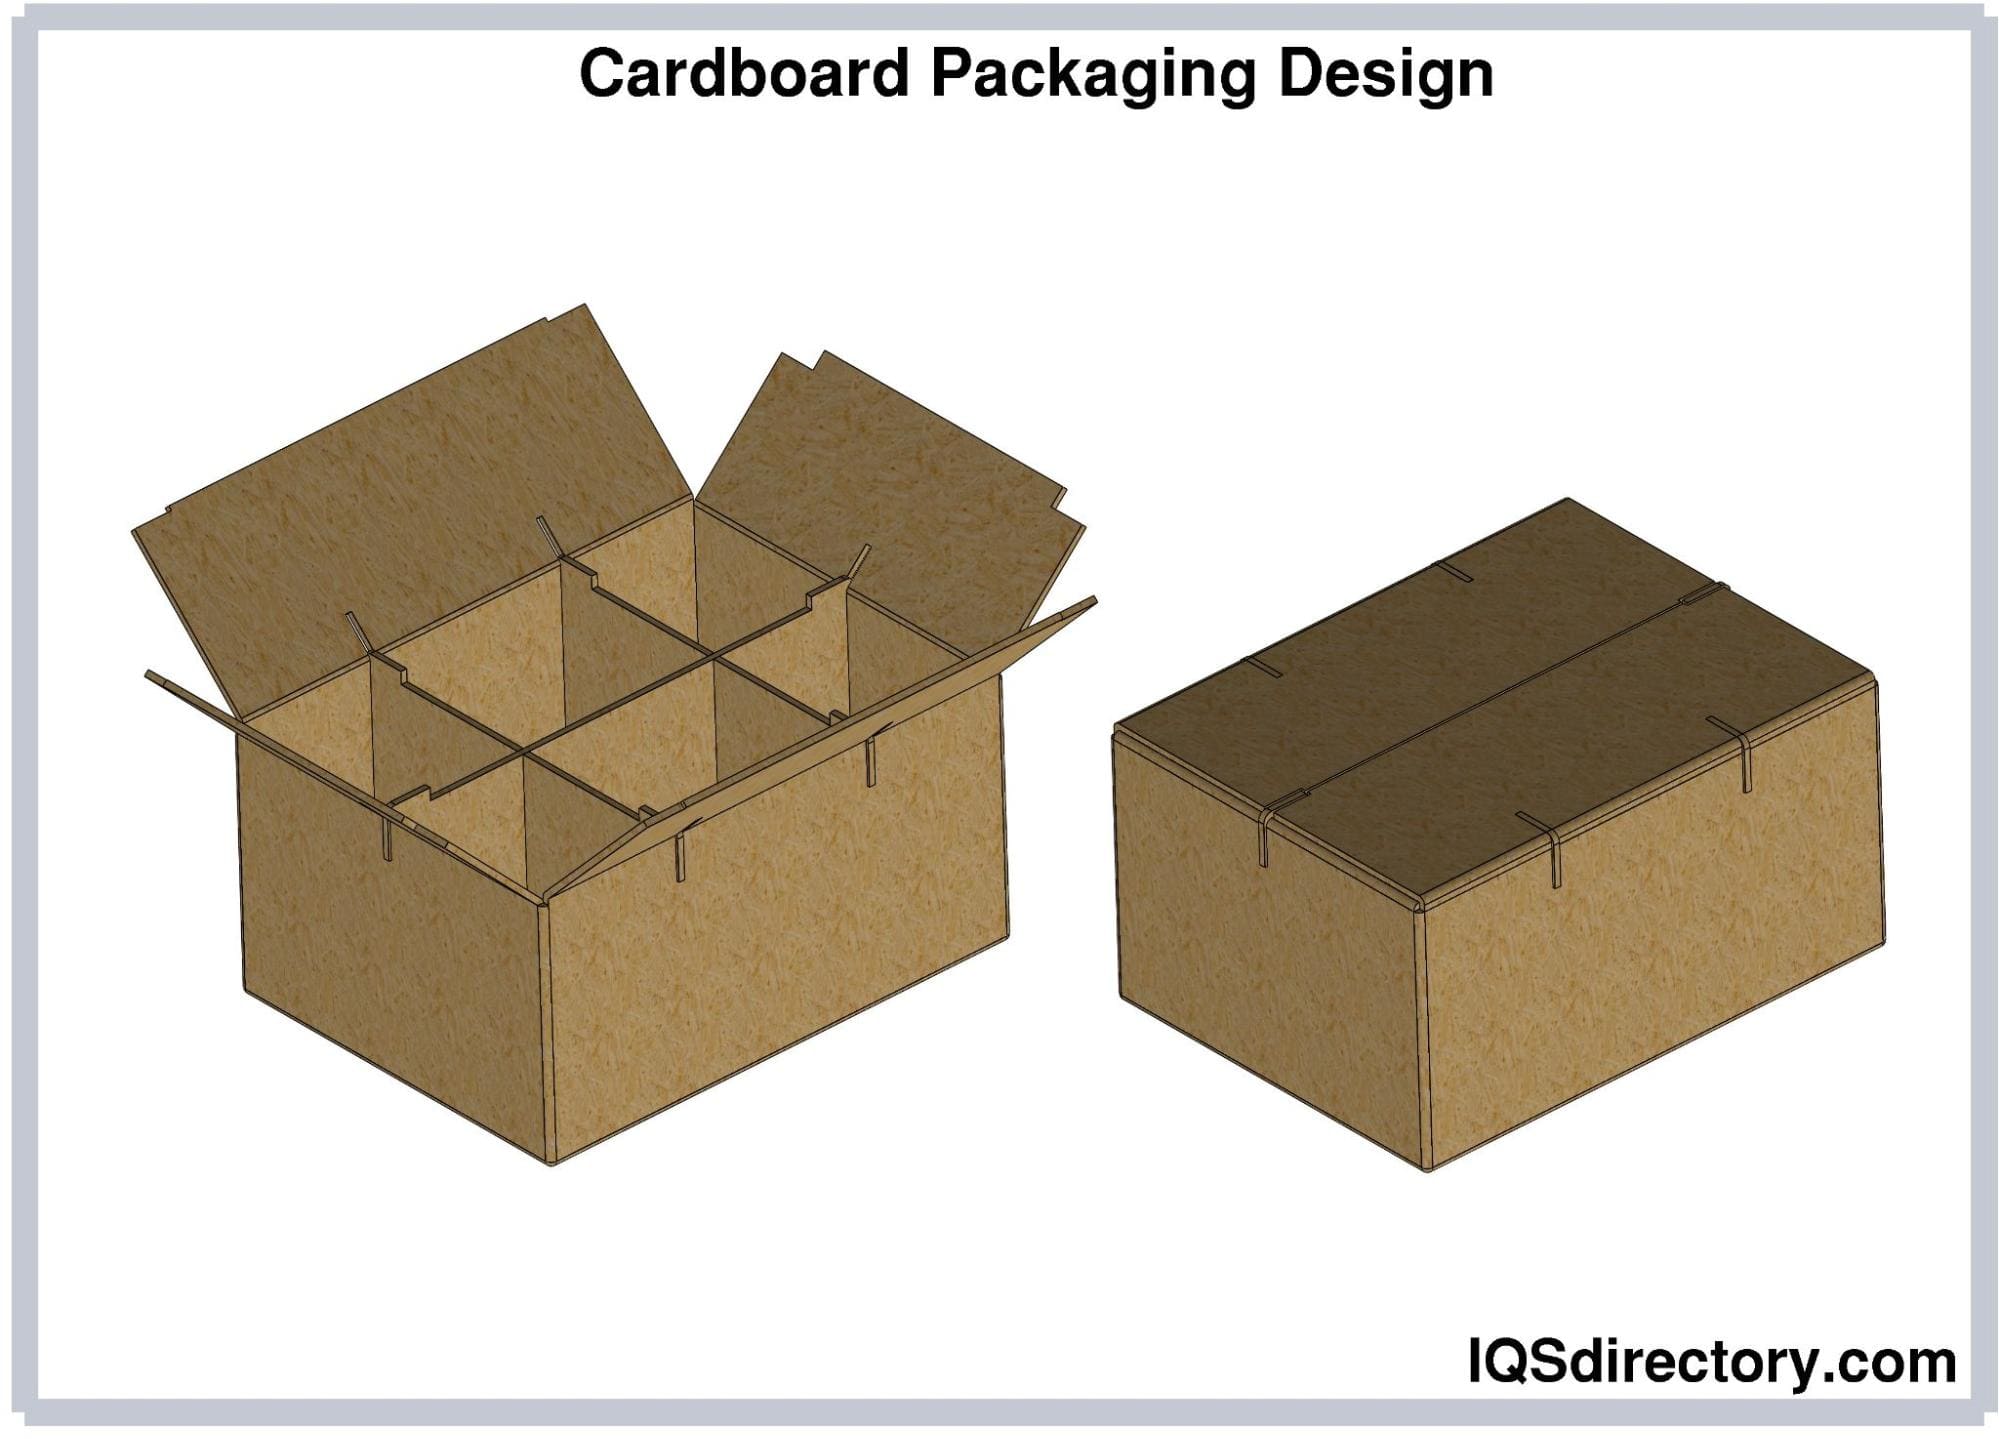 Cardboard Packaging Design